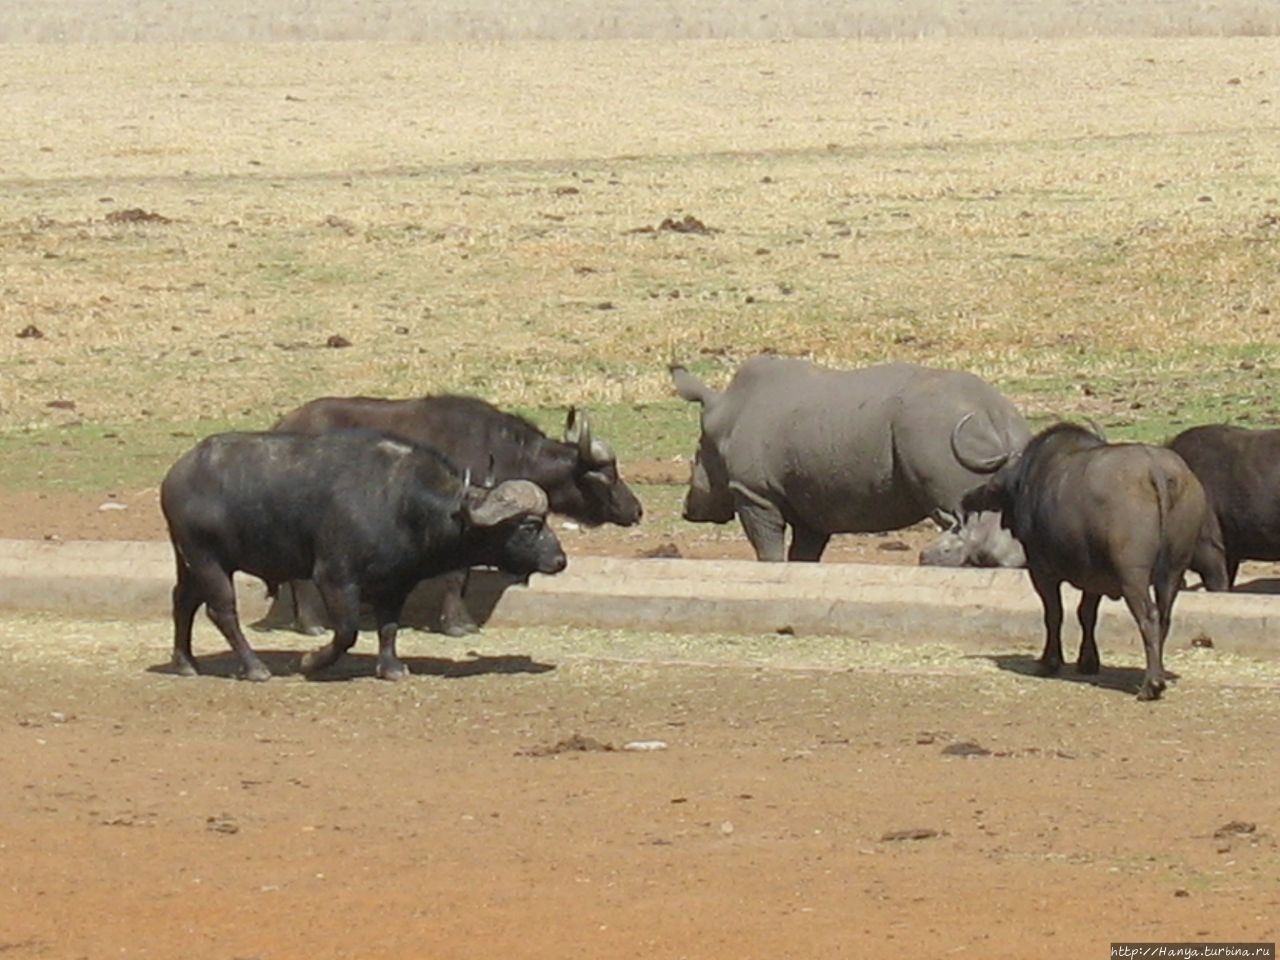 Санитарная остановка со зверями и Лиденбург с обедом. Ч.5 Провинция Мпумаланга, ЮАР